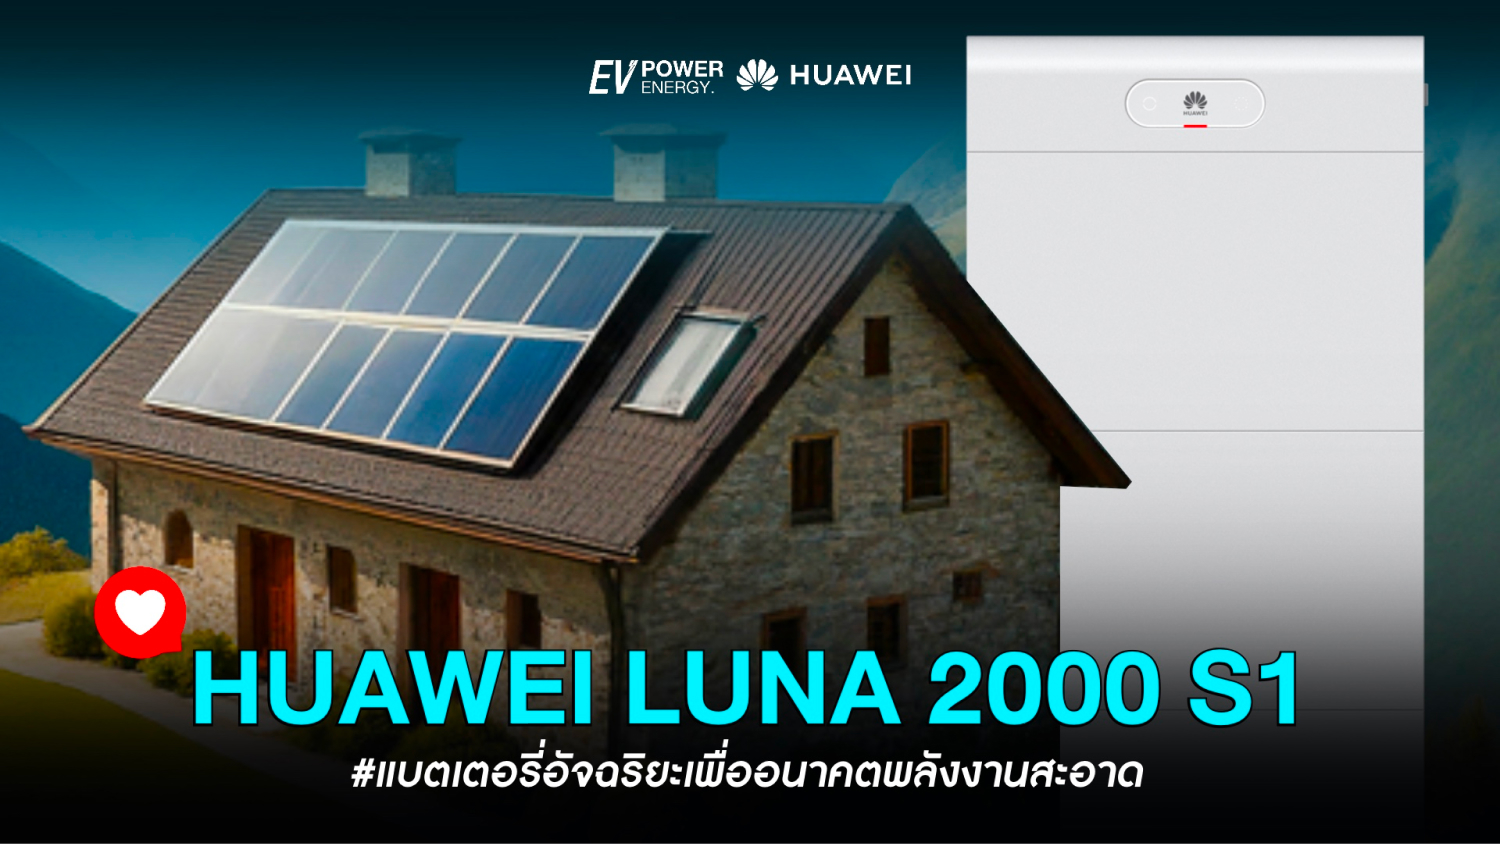 Huawei LUNA 2000 S1 แบตเตอรี่อัจฉริยะเพื่ออนาคตพลังงานสะอาด